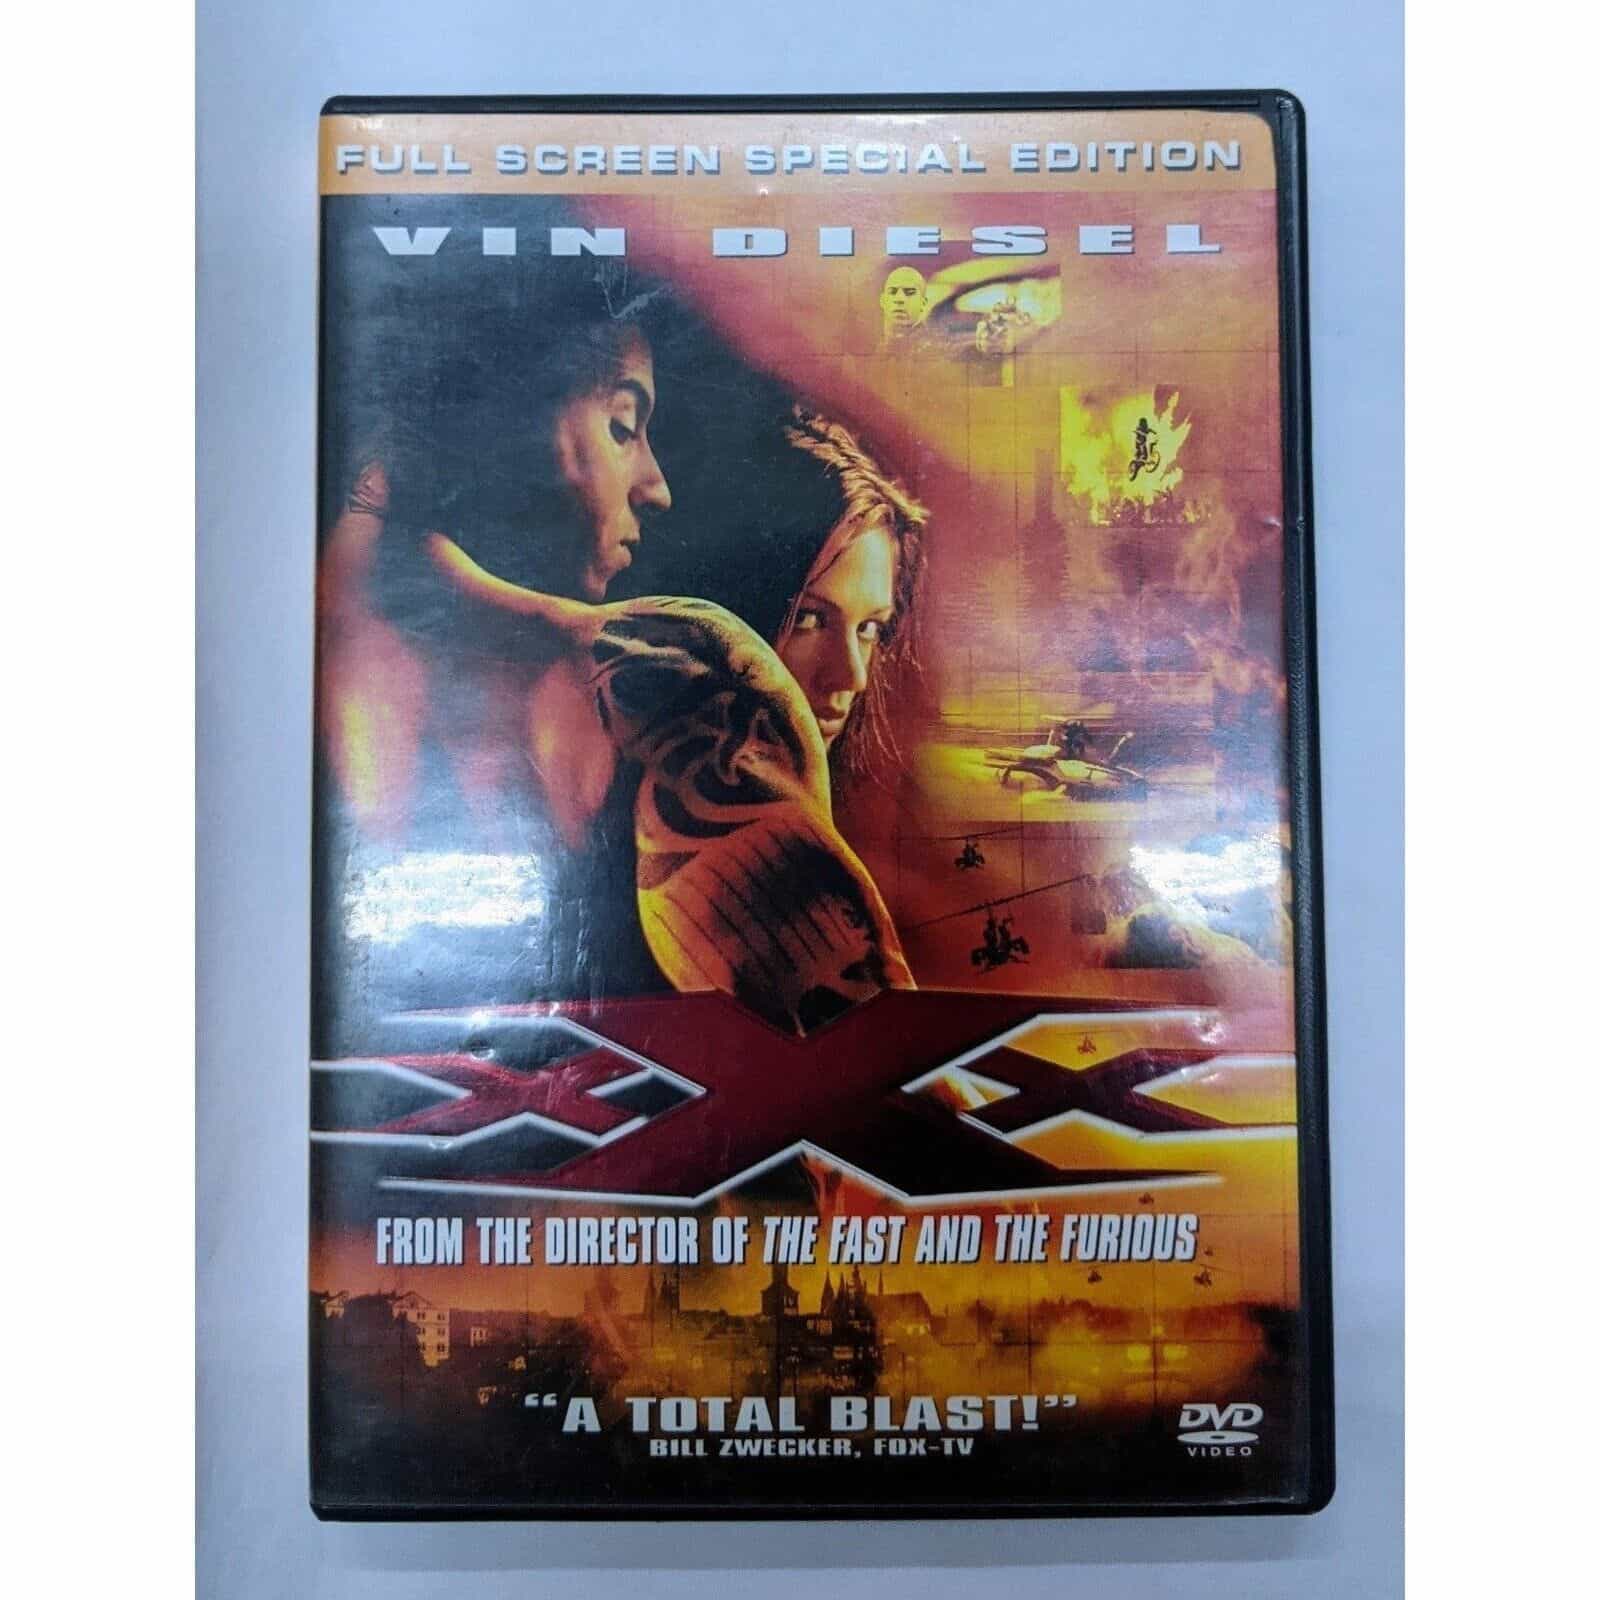 XXX DVD movie